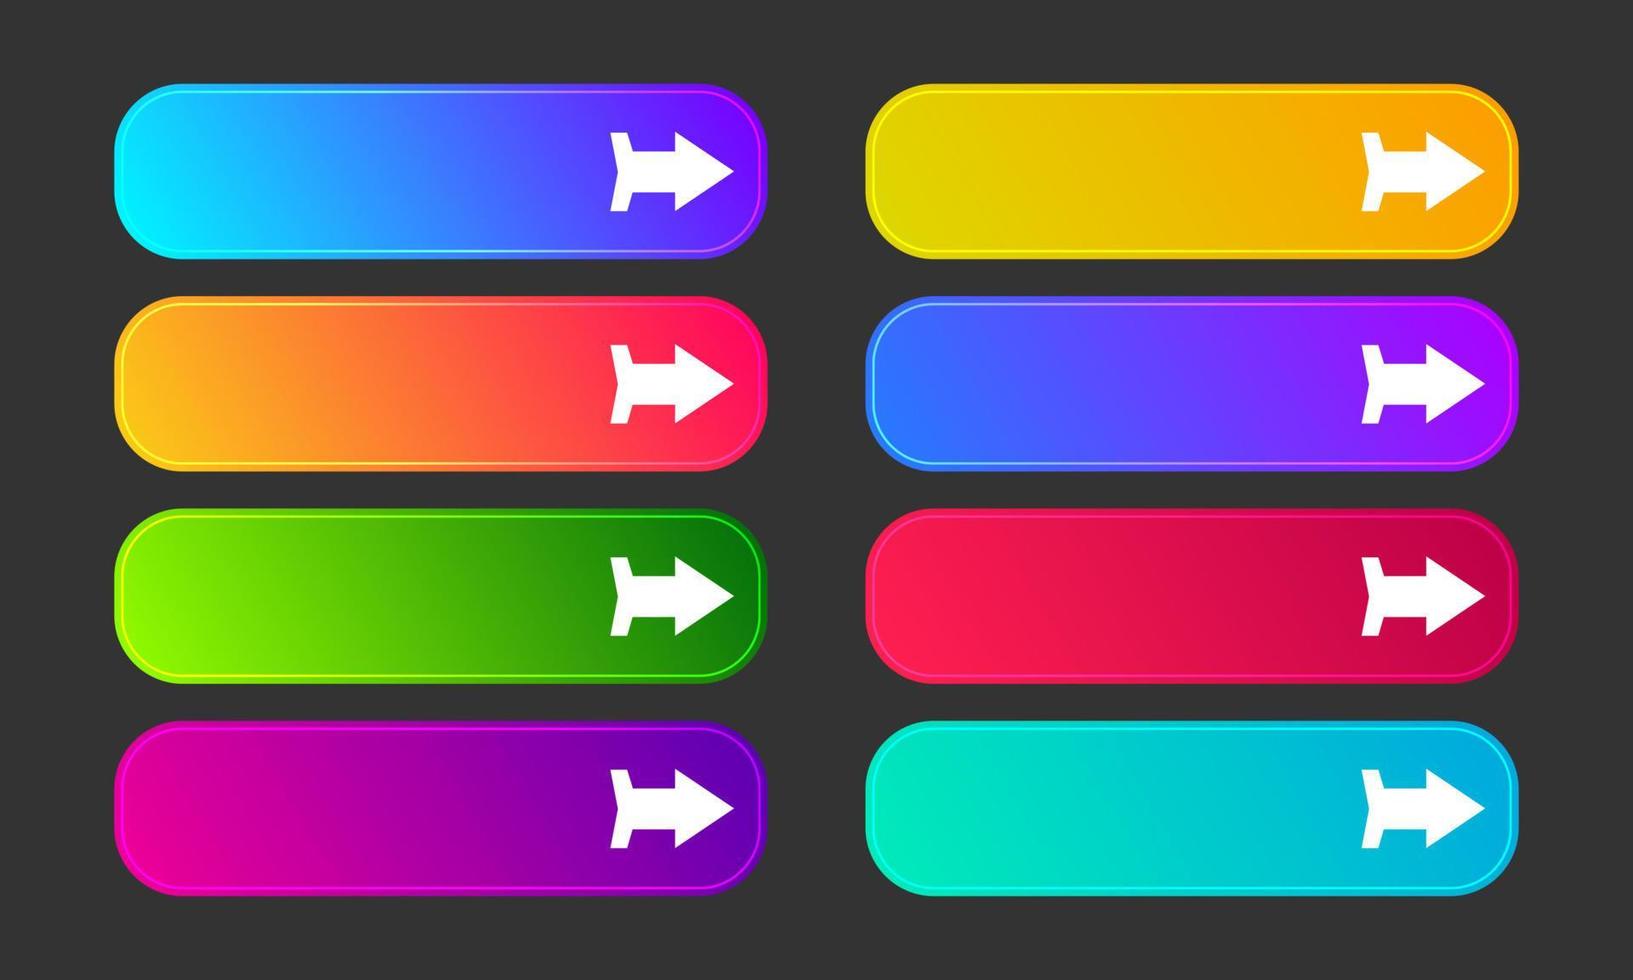 kleurrijk helling toetsen met pijlen. reeks van acht modern abstract web toetsen. vector illustratie